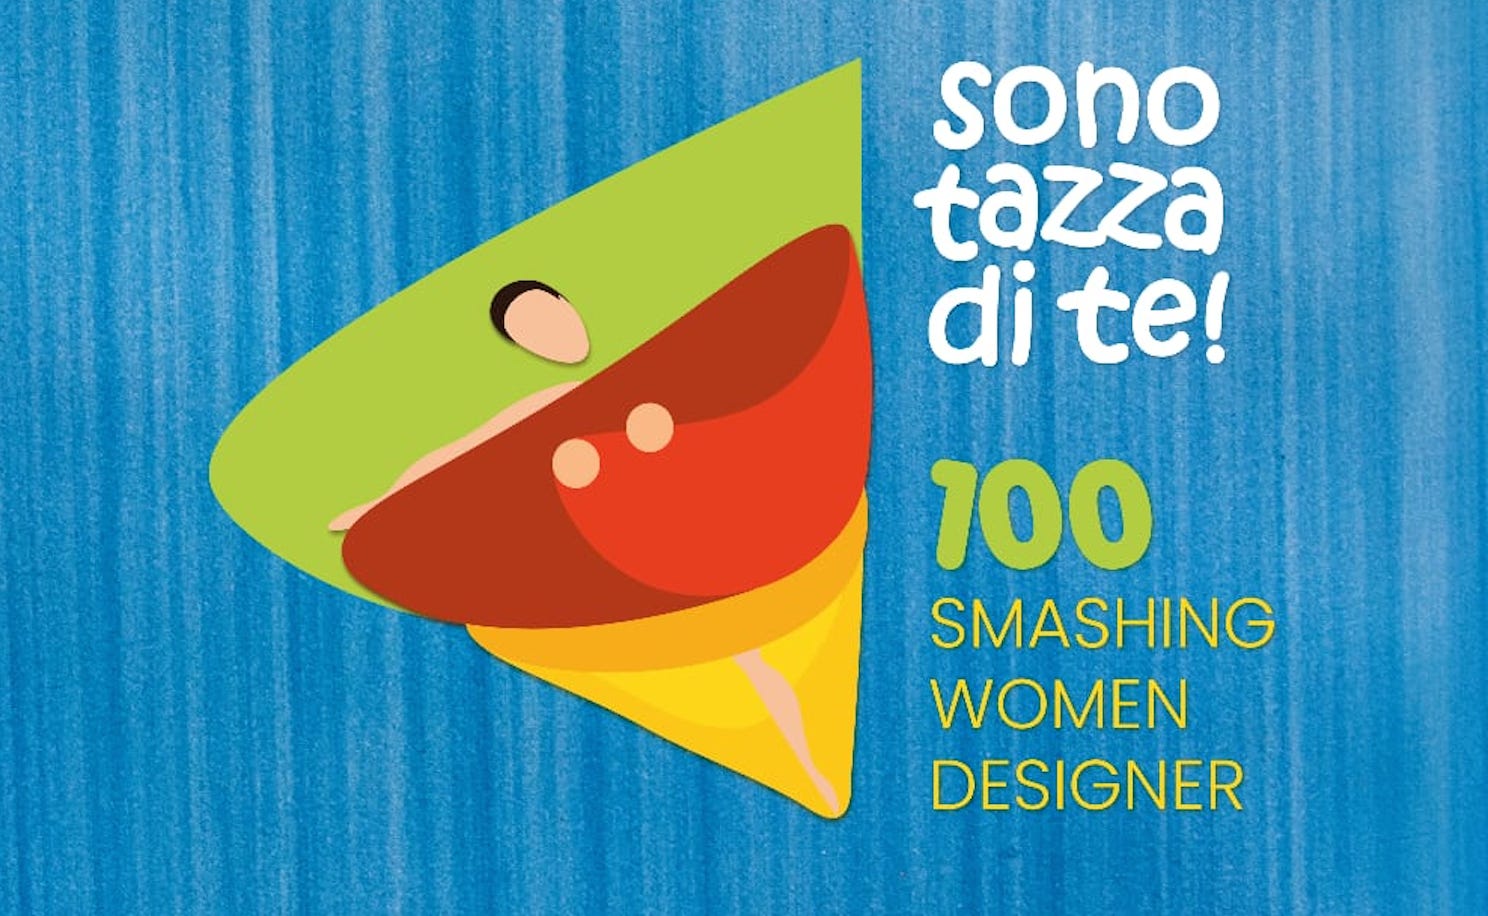 Vietri sul Mare: mostra “Sono tazza di te!| – 100 smashing women designer”, conferenza stampa